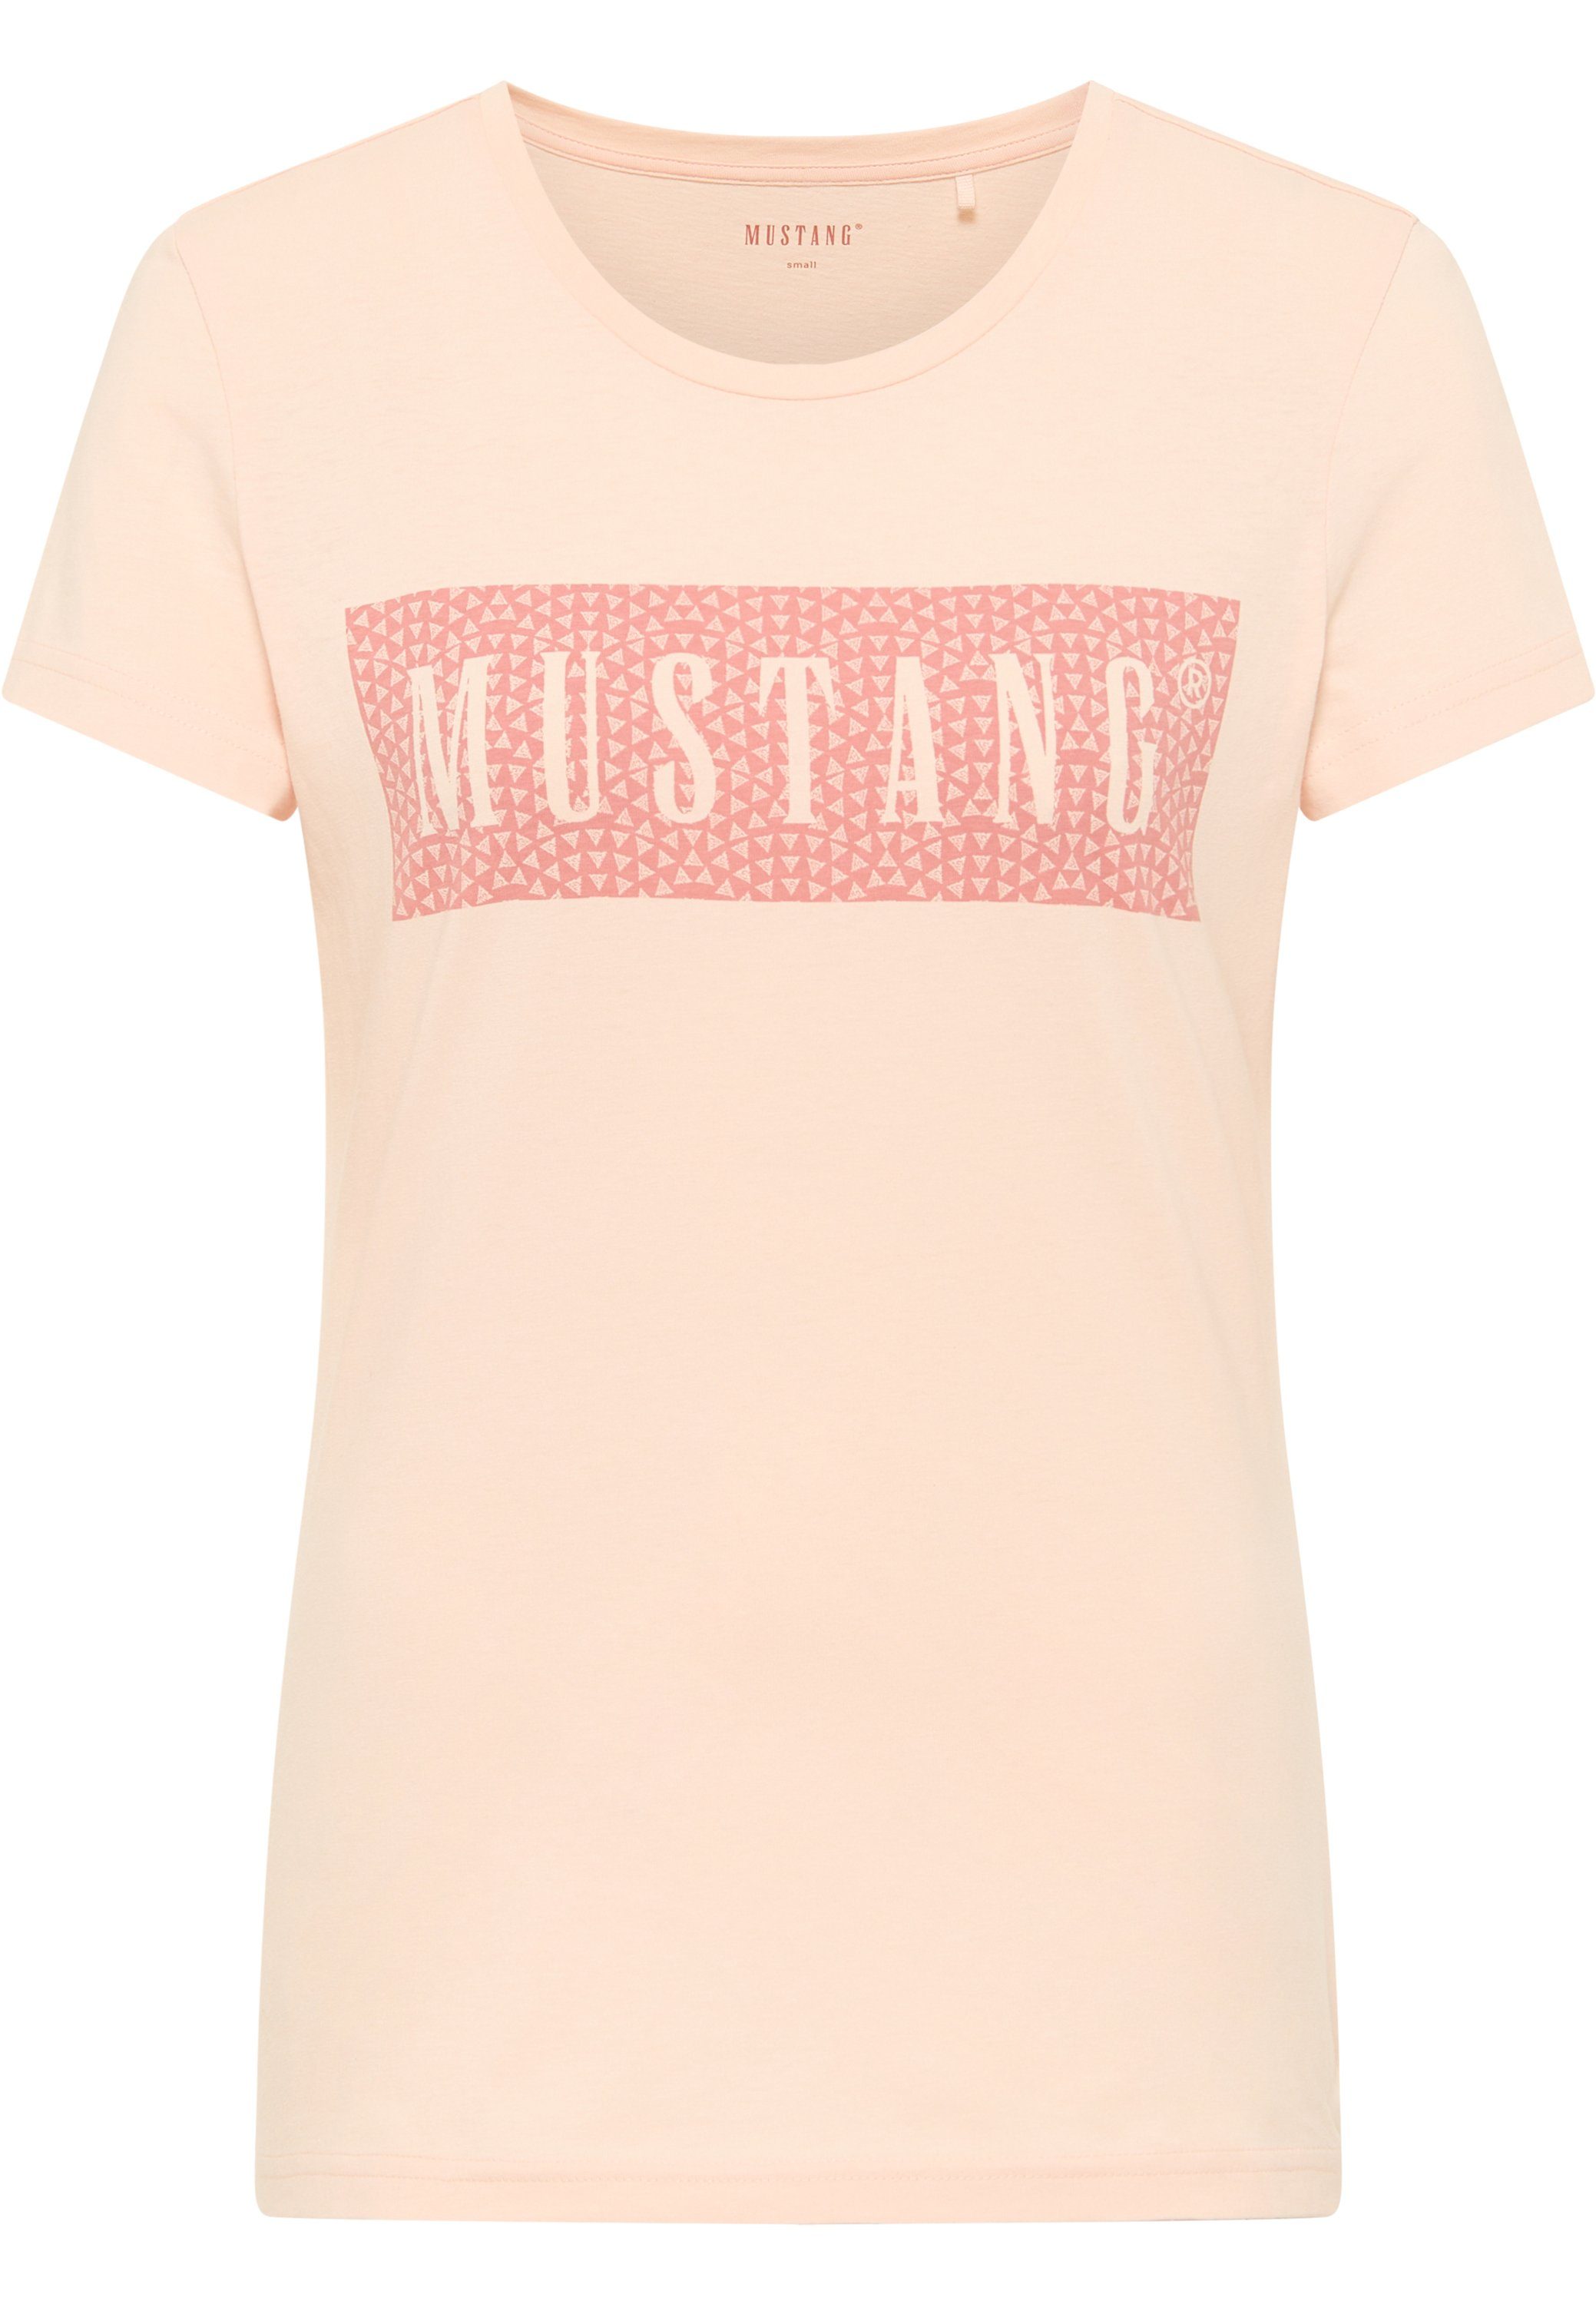 Mustang MUSTANG Kurzarmshirt Print-Shirt T-Shirt hellrosa